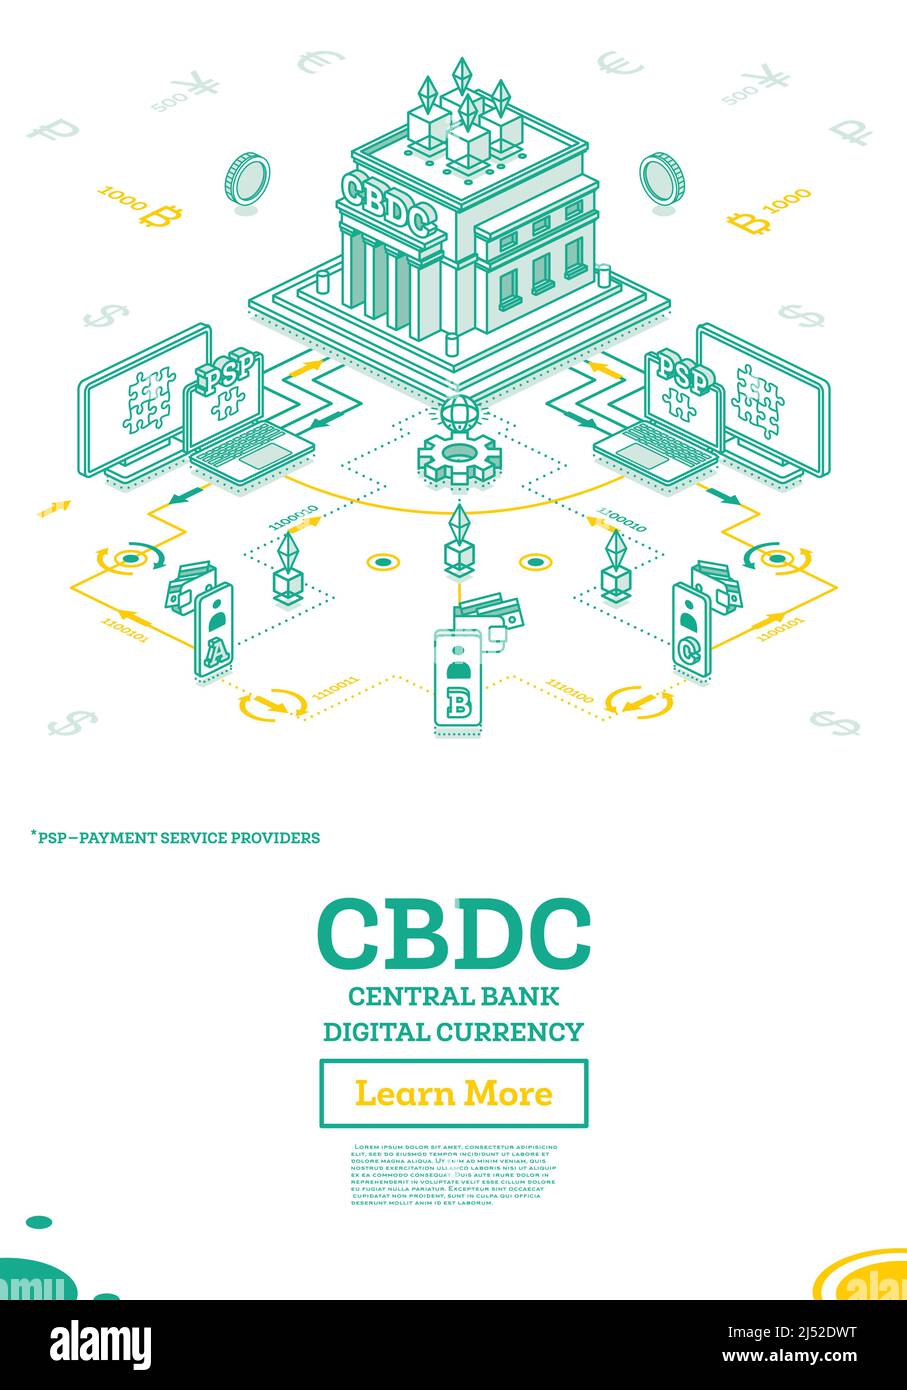 Banque centrale monnaie numérique ou CBDC. Concept financier isométrique avec schéma d'interaction entre la Banque centrale et les fournisseurs de services de paiement. Illustration de Vecteur